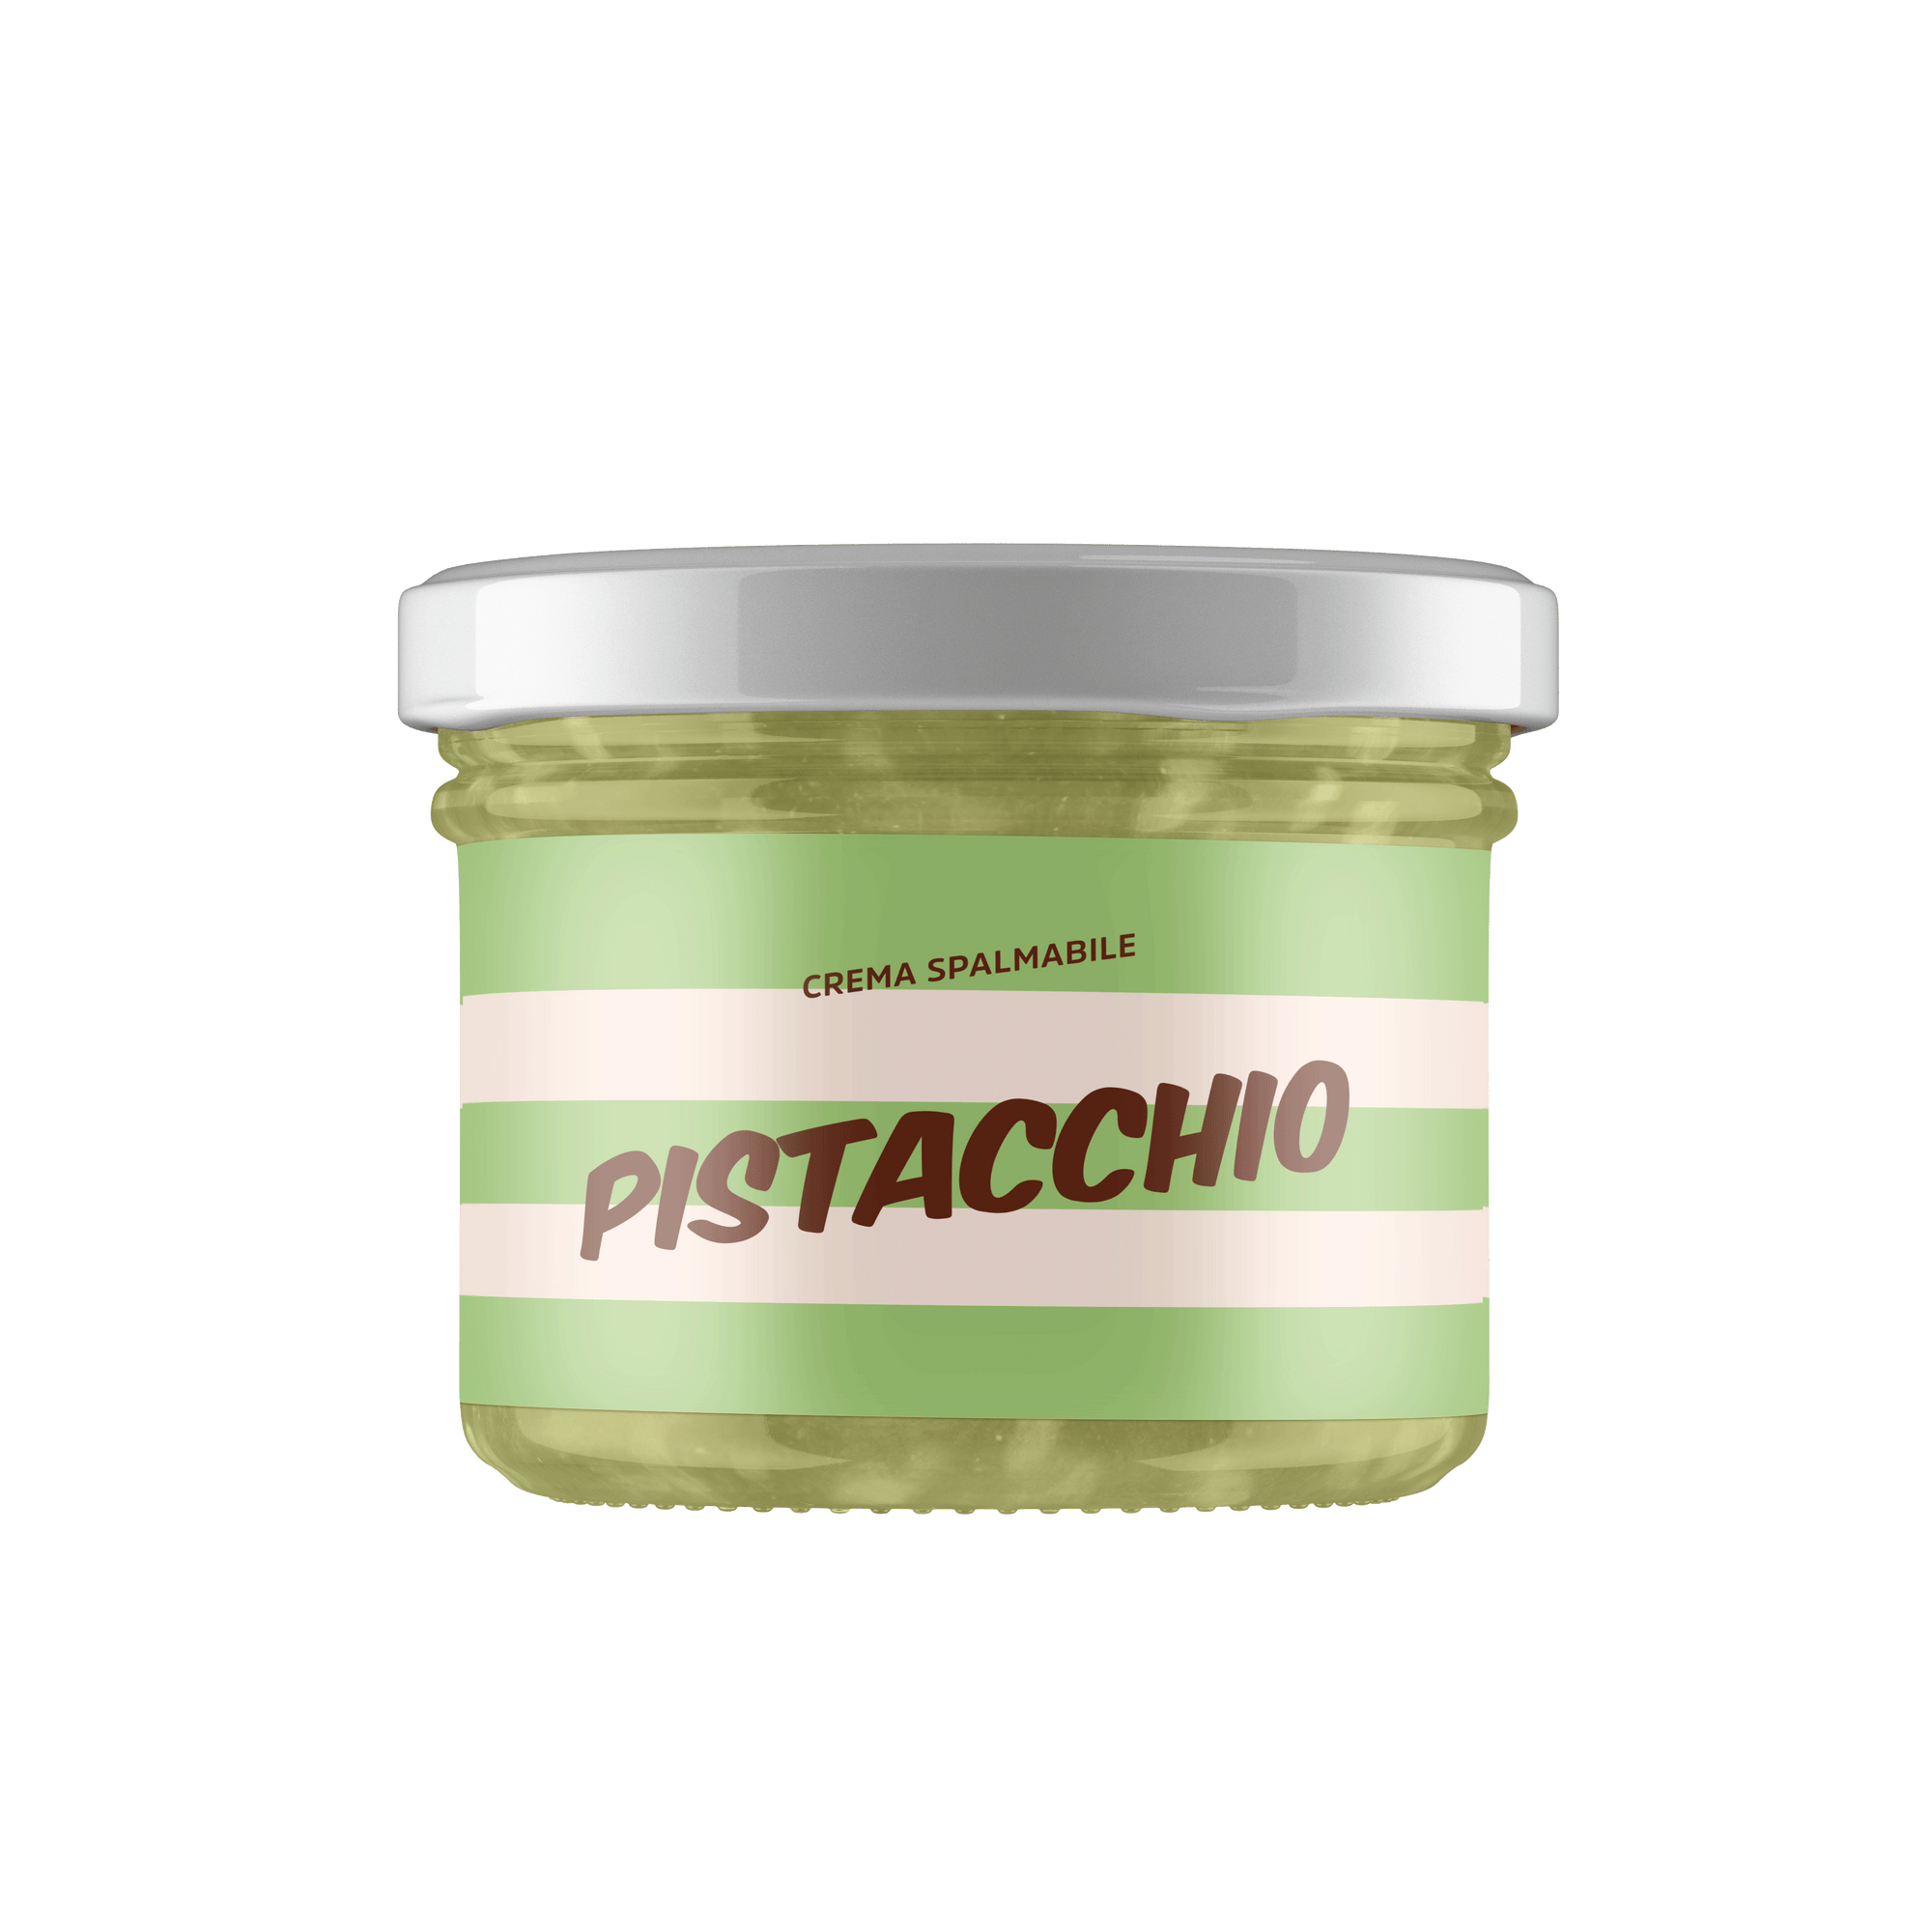 Crema spalmabile Pistacchio